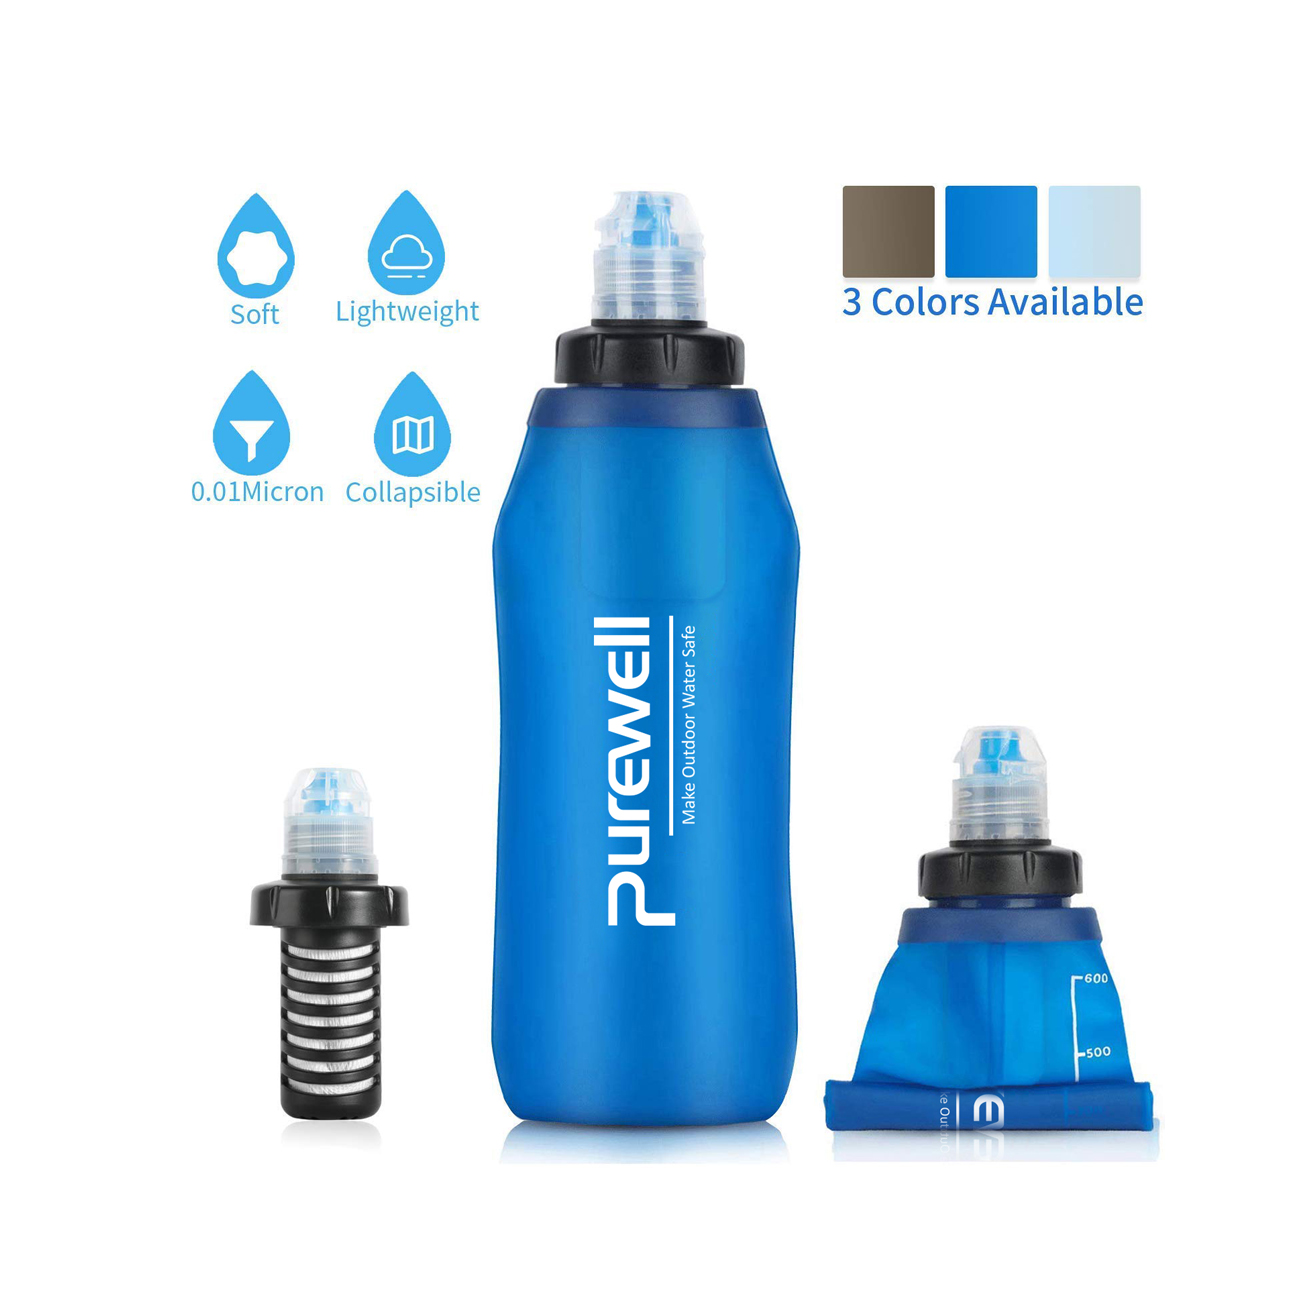 Purewell soft soft flask 500ml supplier-1